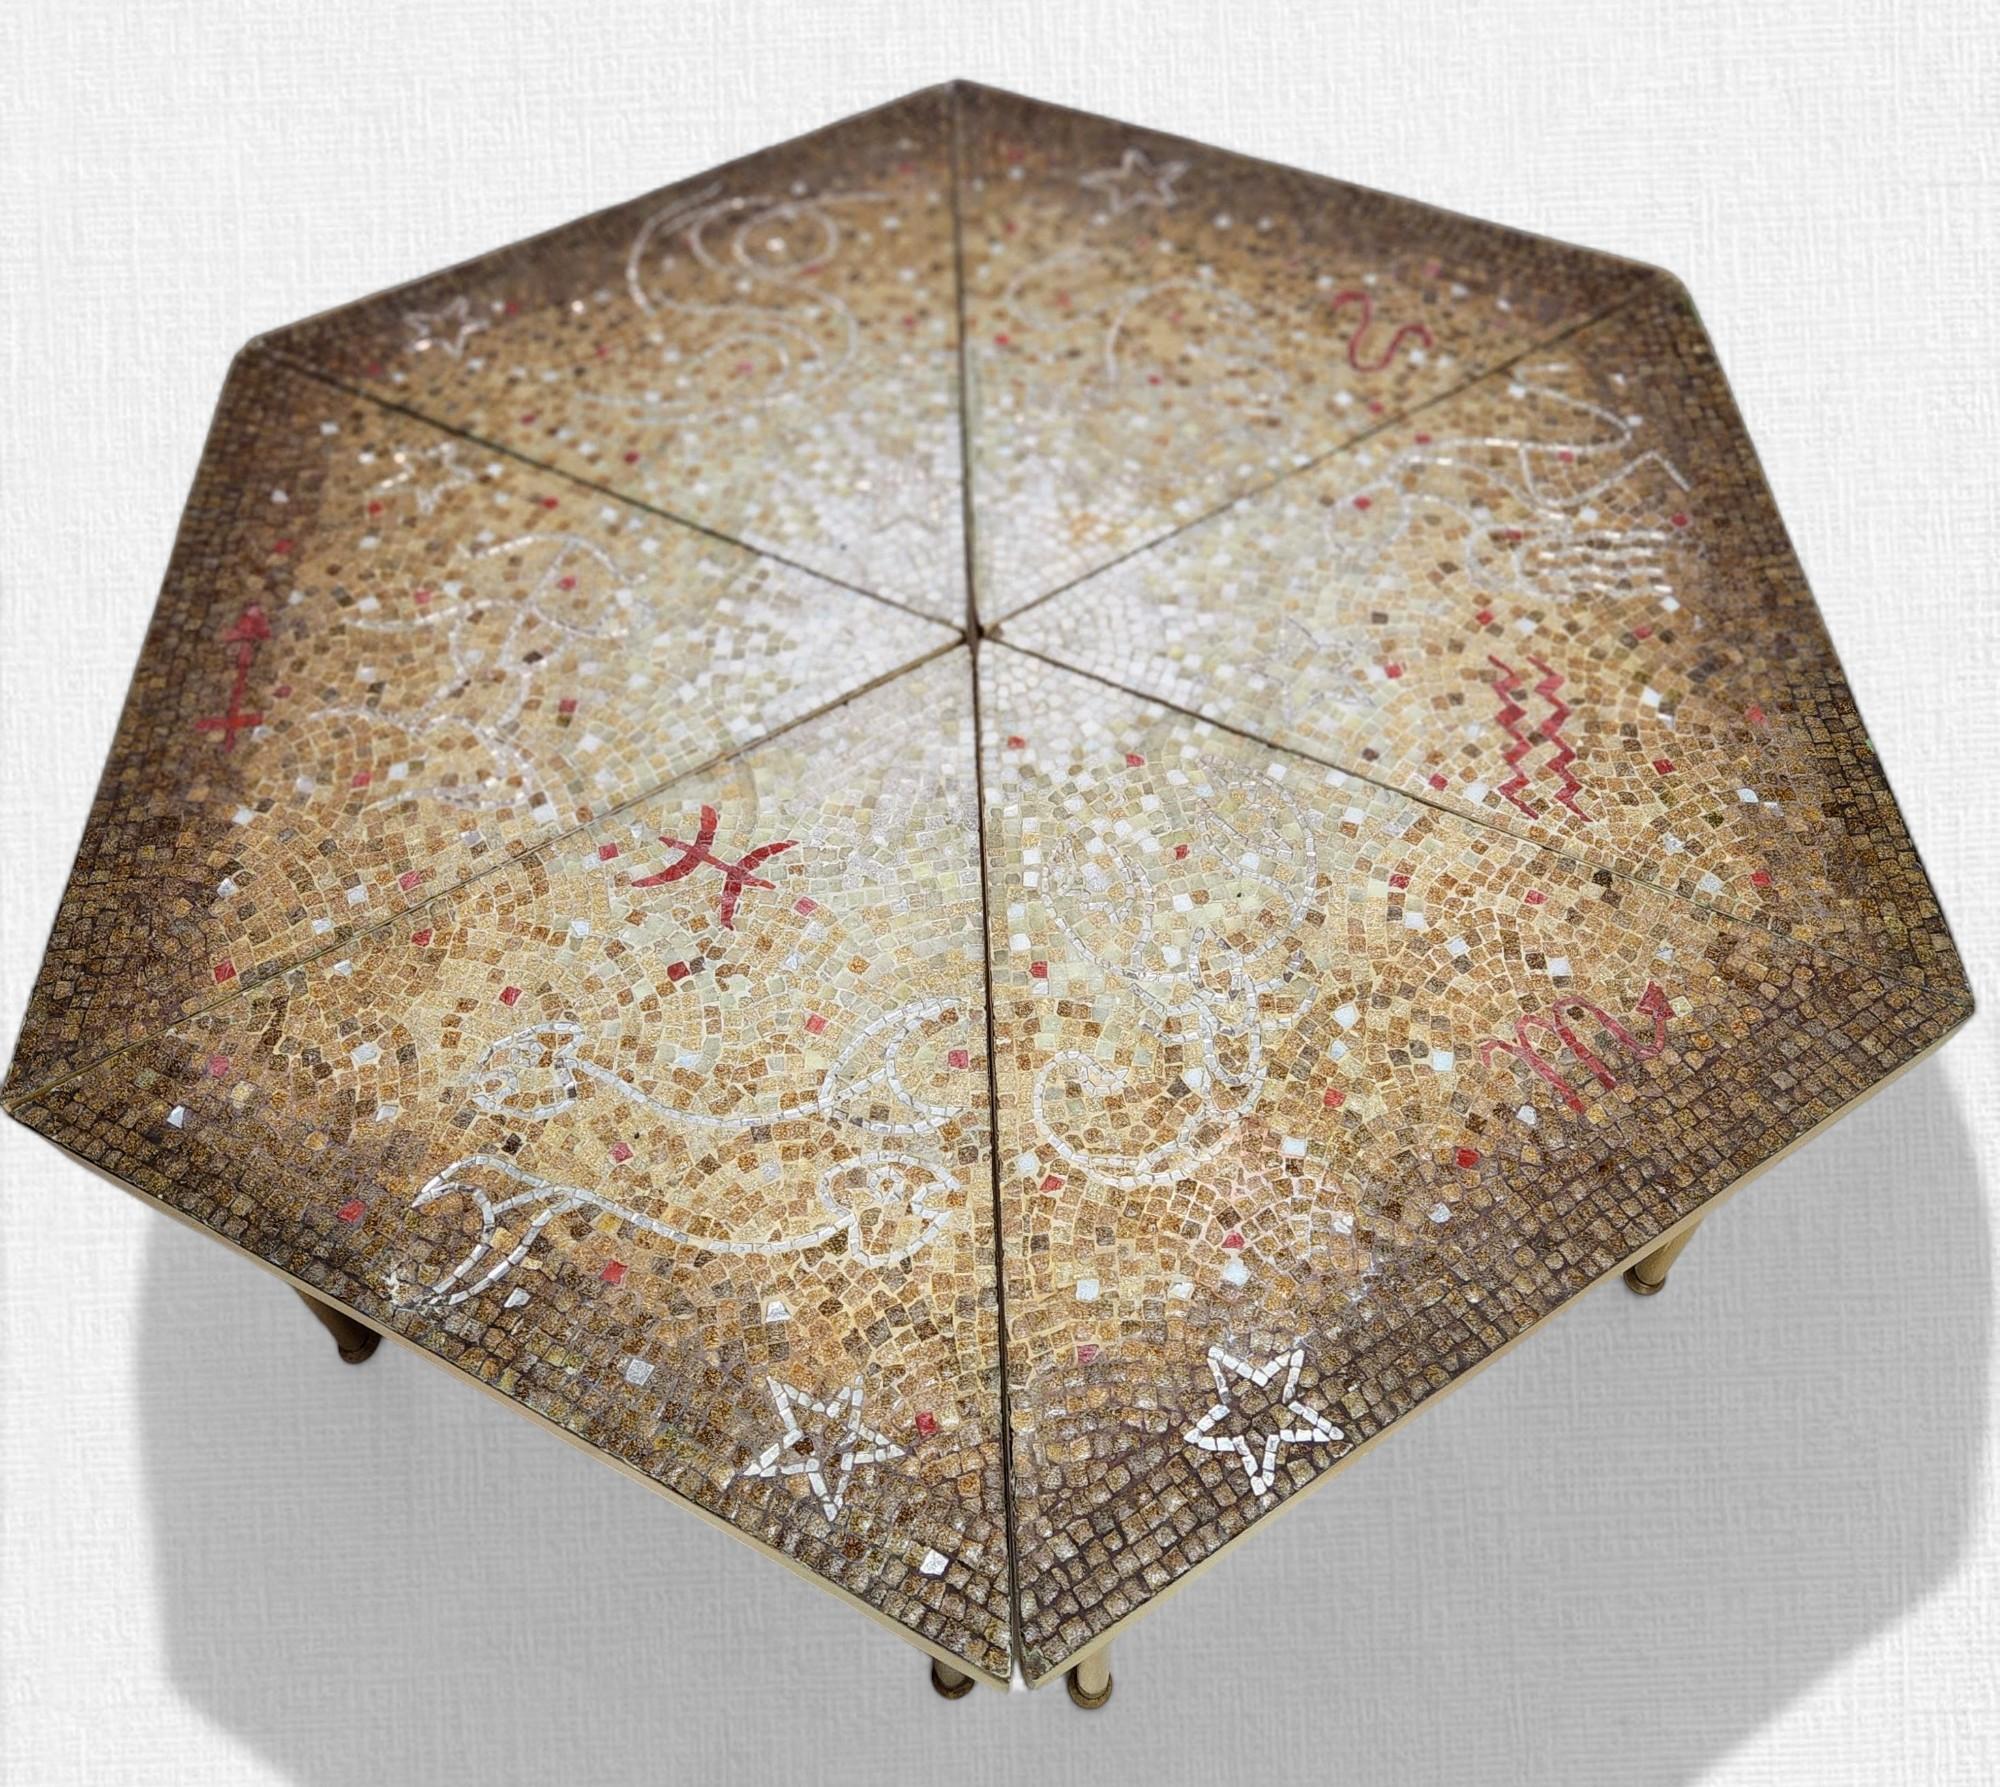 Six Piece Studio Mosaic table by Genaro Alvarez composed of. Motifs complexes de mosaïque de verre incrustés basés sur les six constellations du Zodiac, sur six bases triangulaires interchangeables en acajou, créées au Studio de Genaro Alvarez à